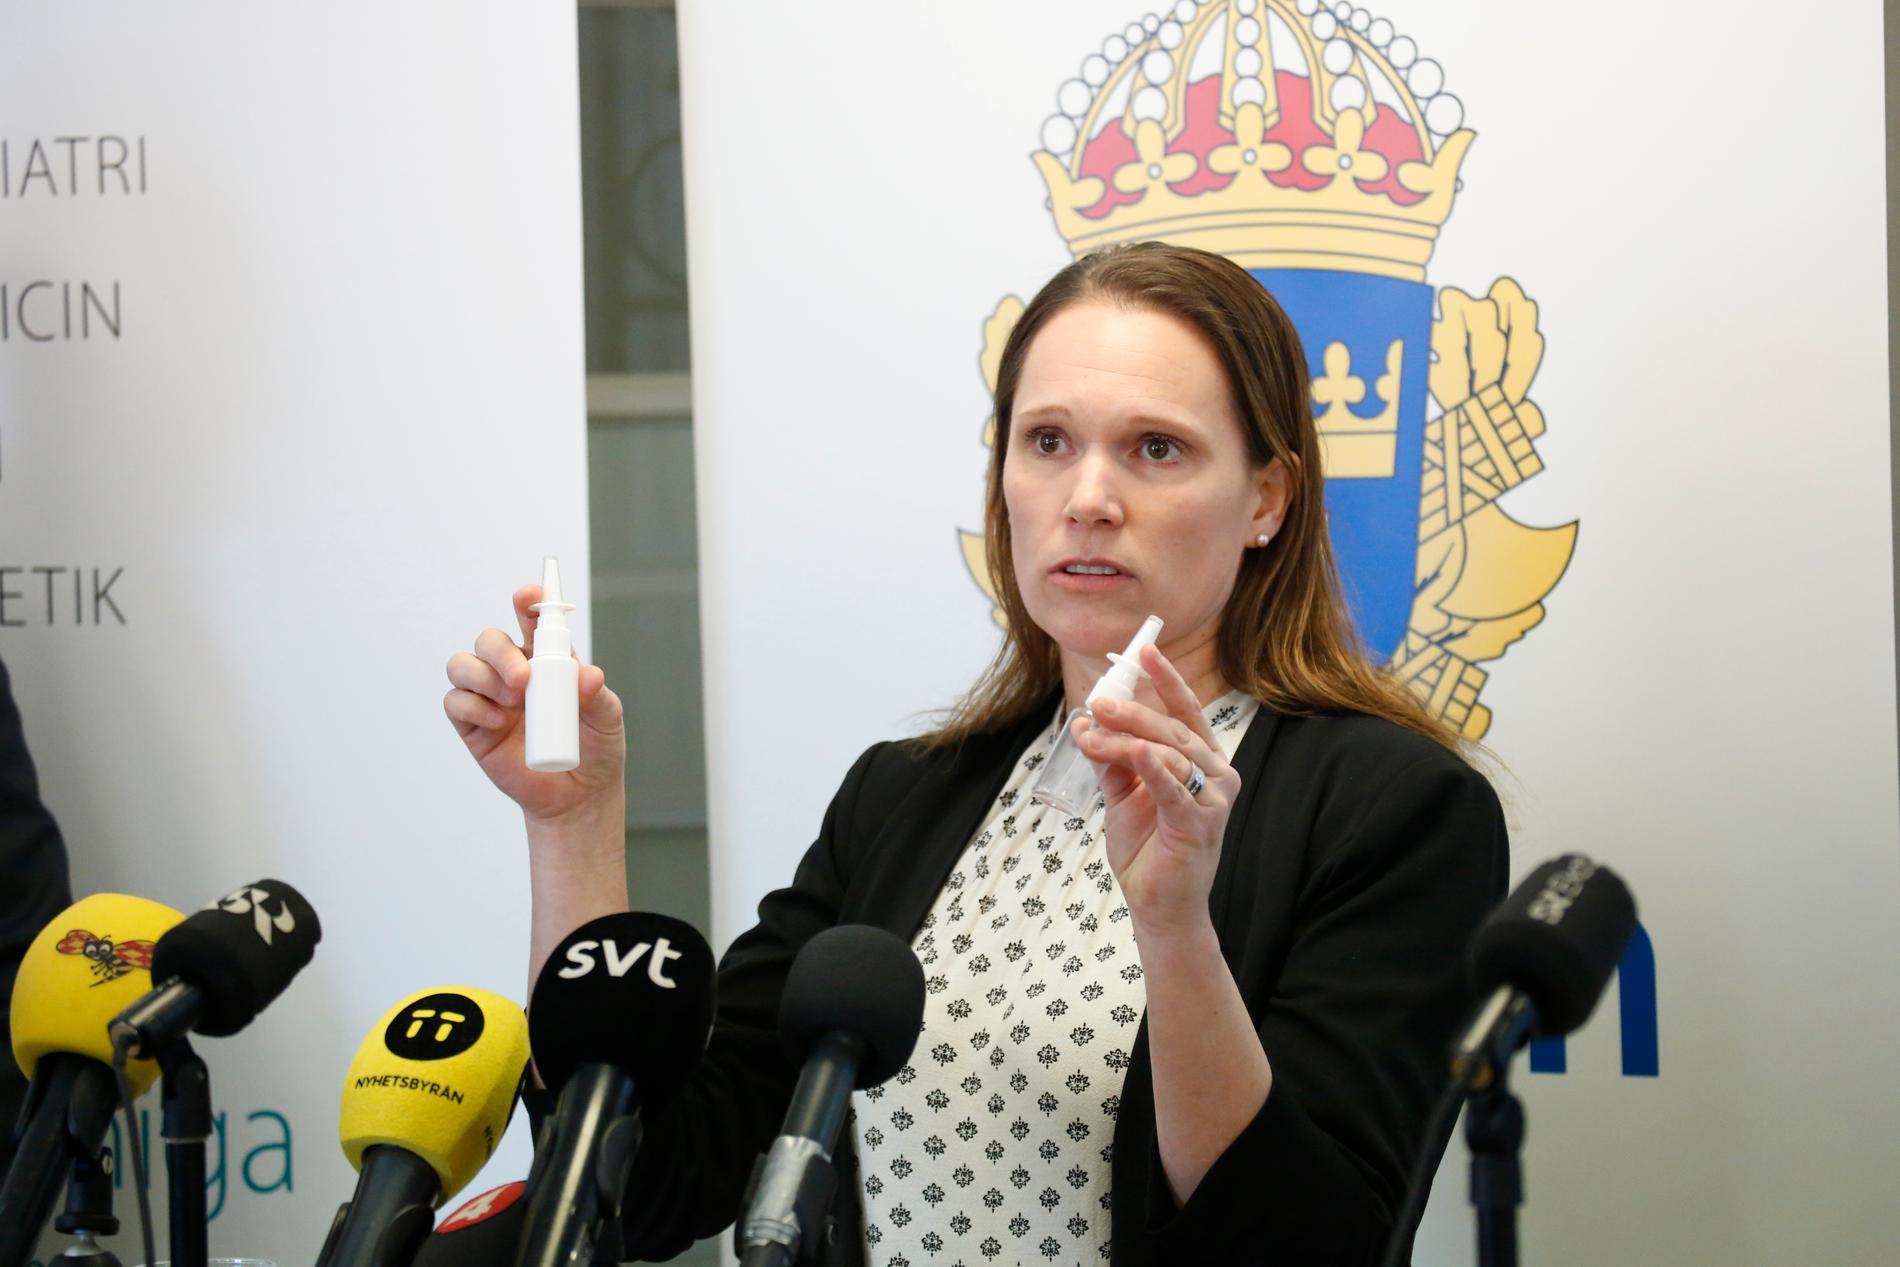 Åsa Torlöf, Polisens utredare, under pressträffen om åtalet mot två personer som sålt fentalnyl och orsakat flera personers död.